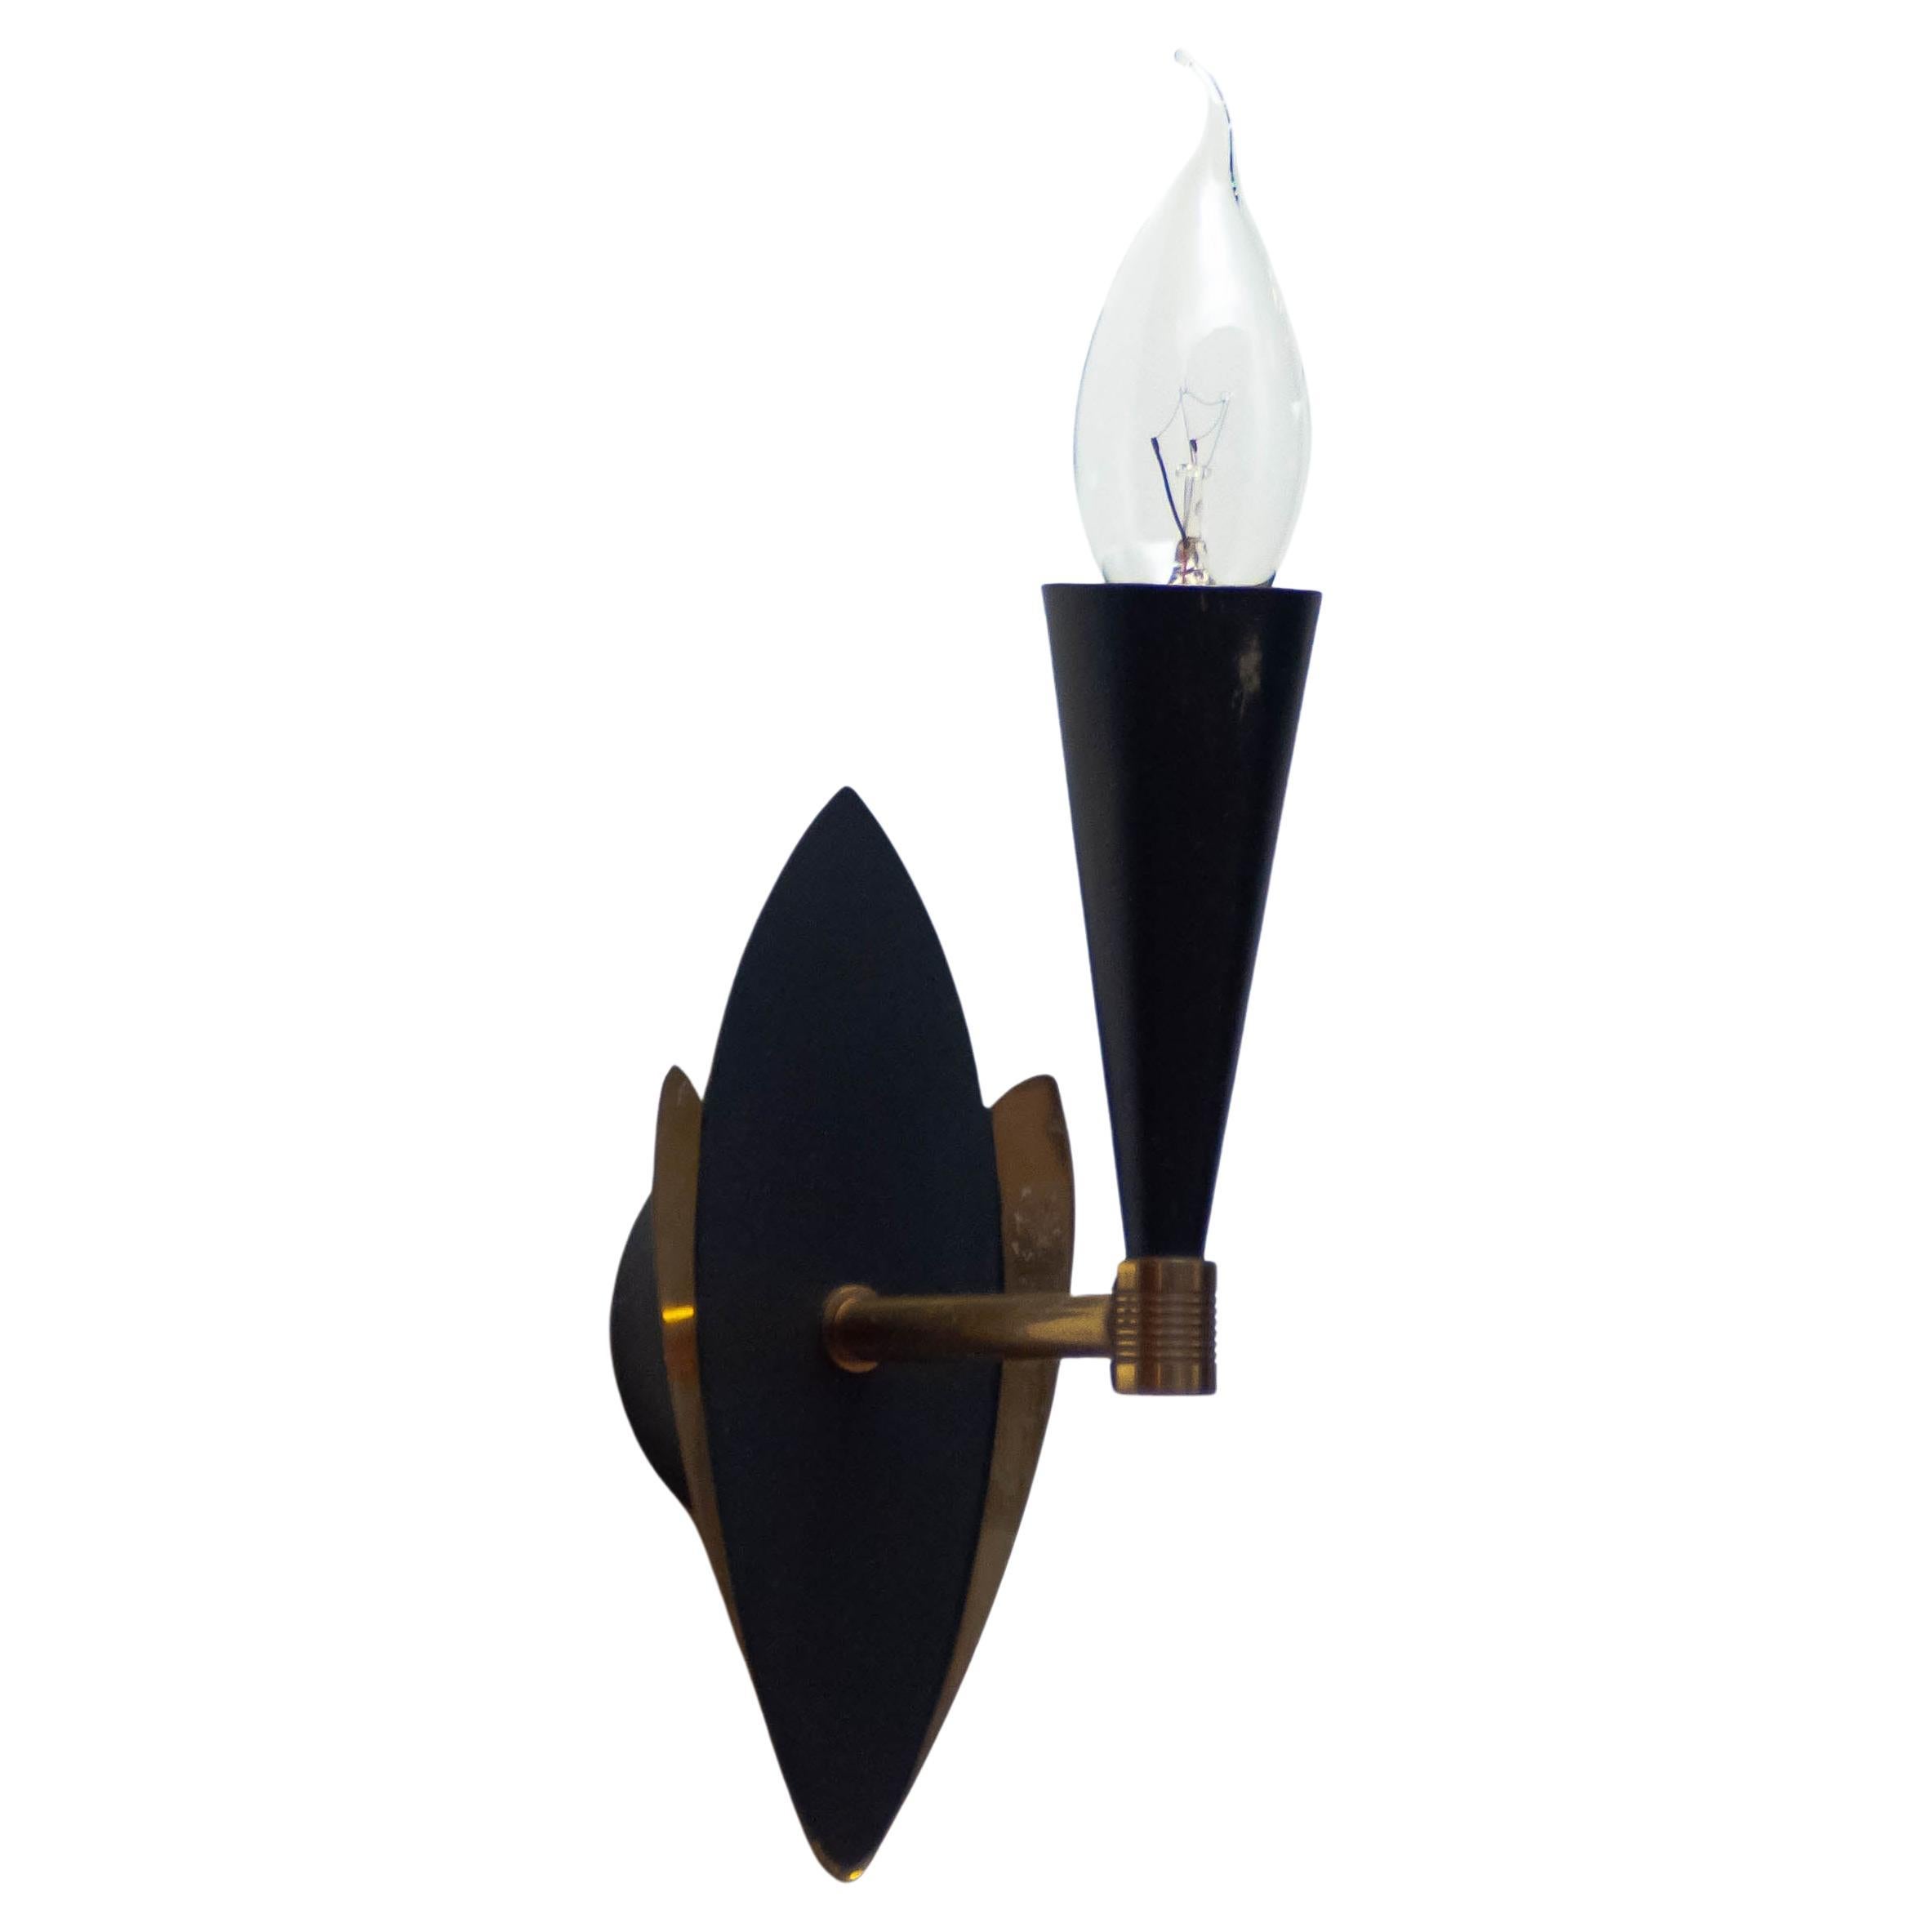 Ein Paar elegante schwedische Designer-Wandleuchten aus den 1950er Jahren aus schwarz lackiertem Metall mit Messingdetails. Beide Lampen sind in gutem Zustand und bestehen aus einer Schraubfassung der Größe E14.
